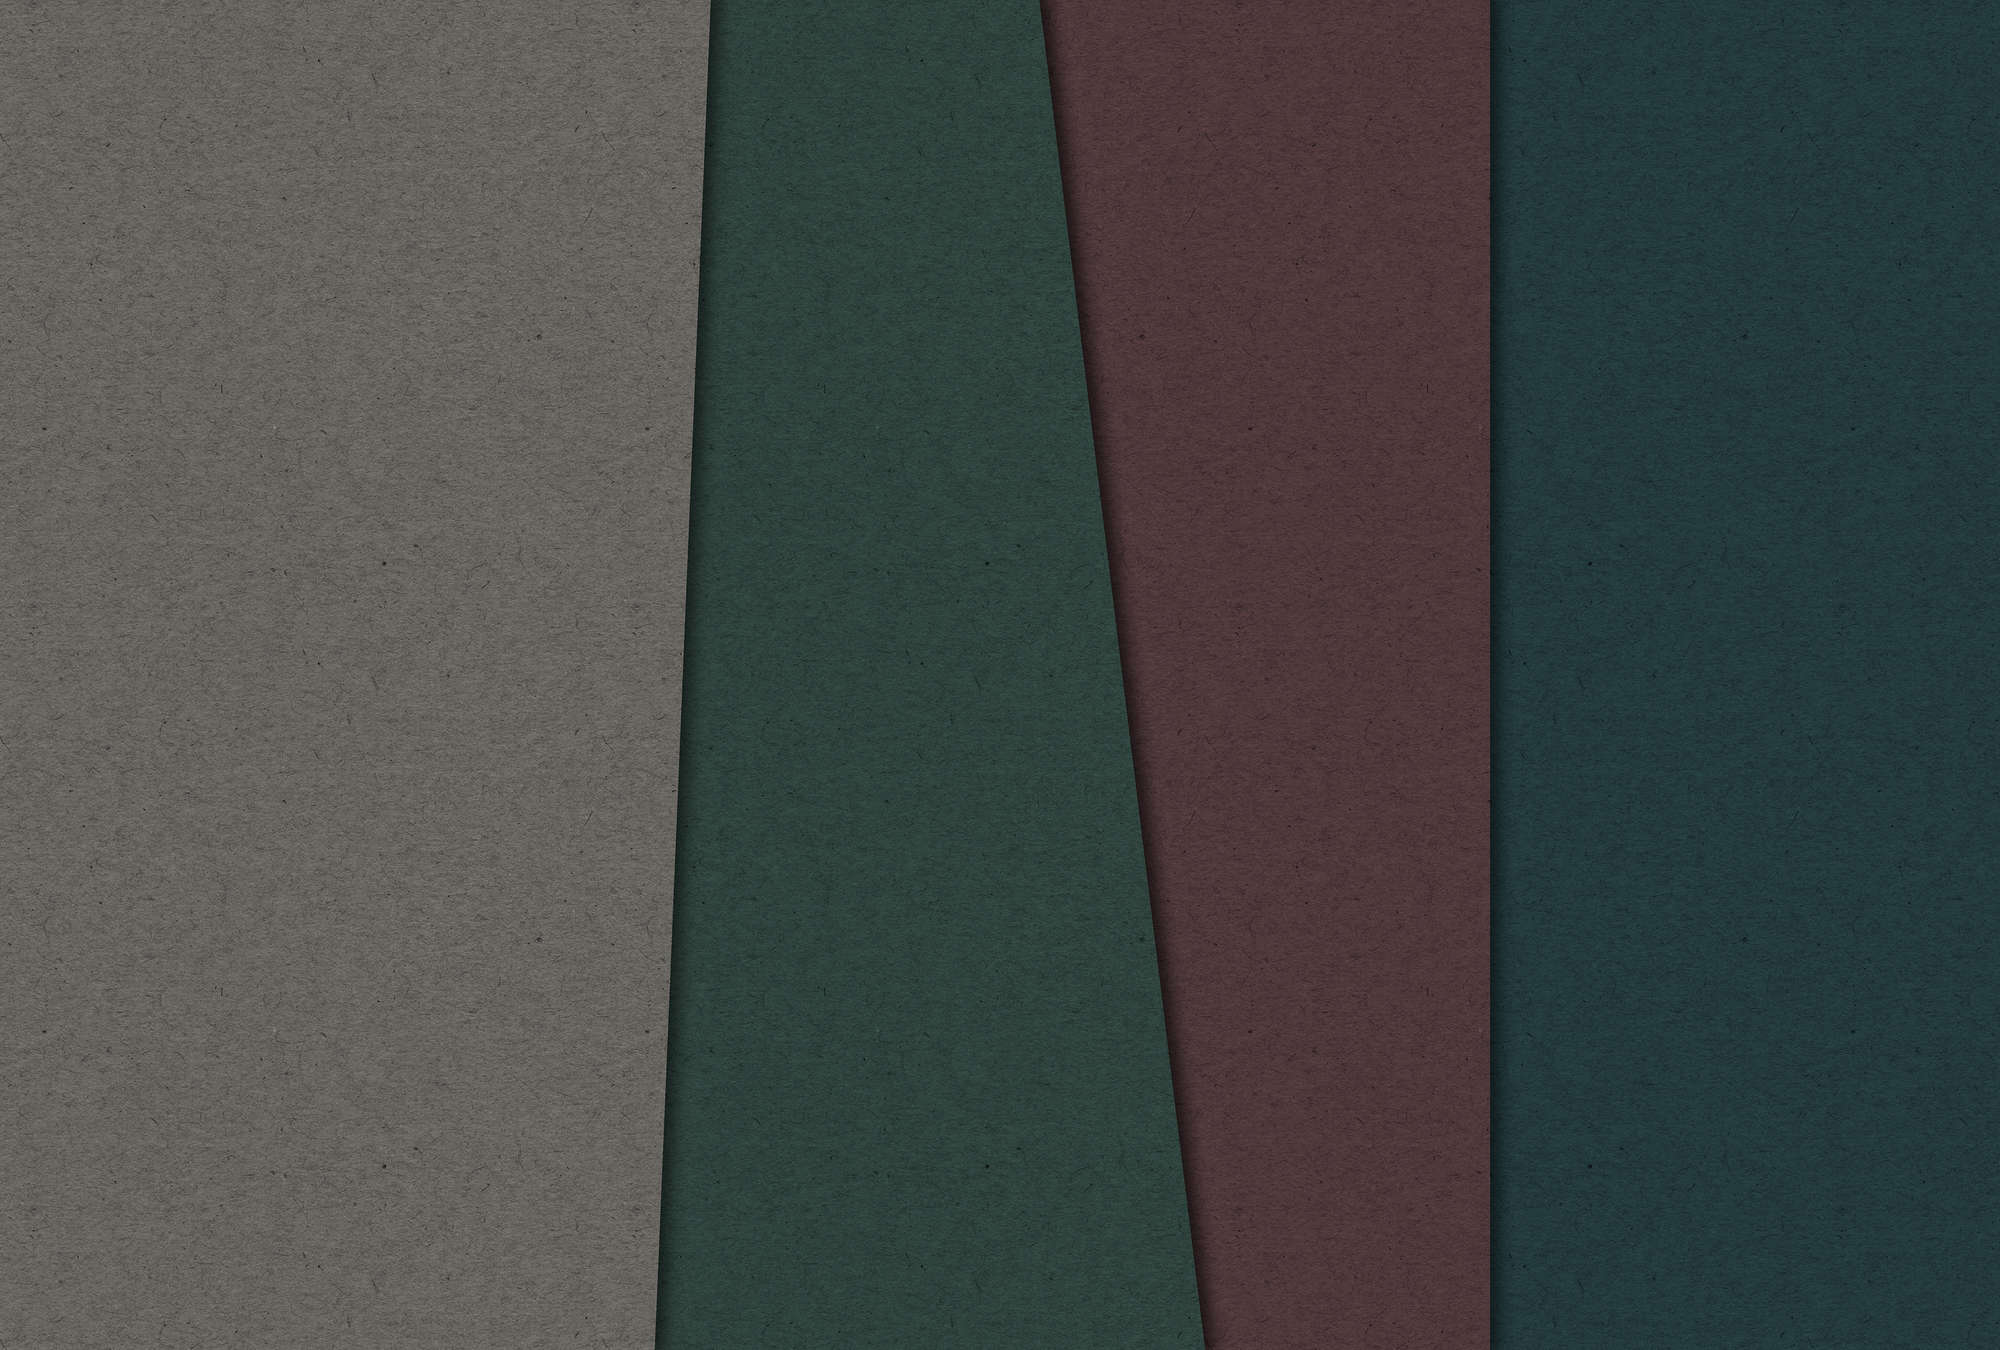             Gelaagd karton 1 - Digital behang met donker gekleurde vlakken in kartonstructuur - Bruin, Groen | Parelglad vlies
        